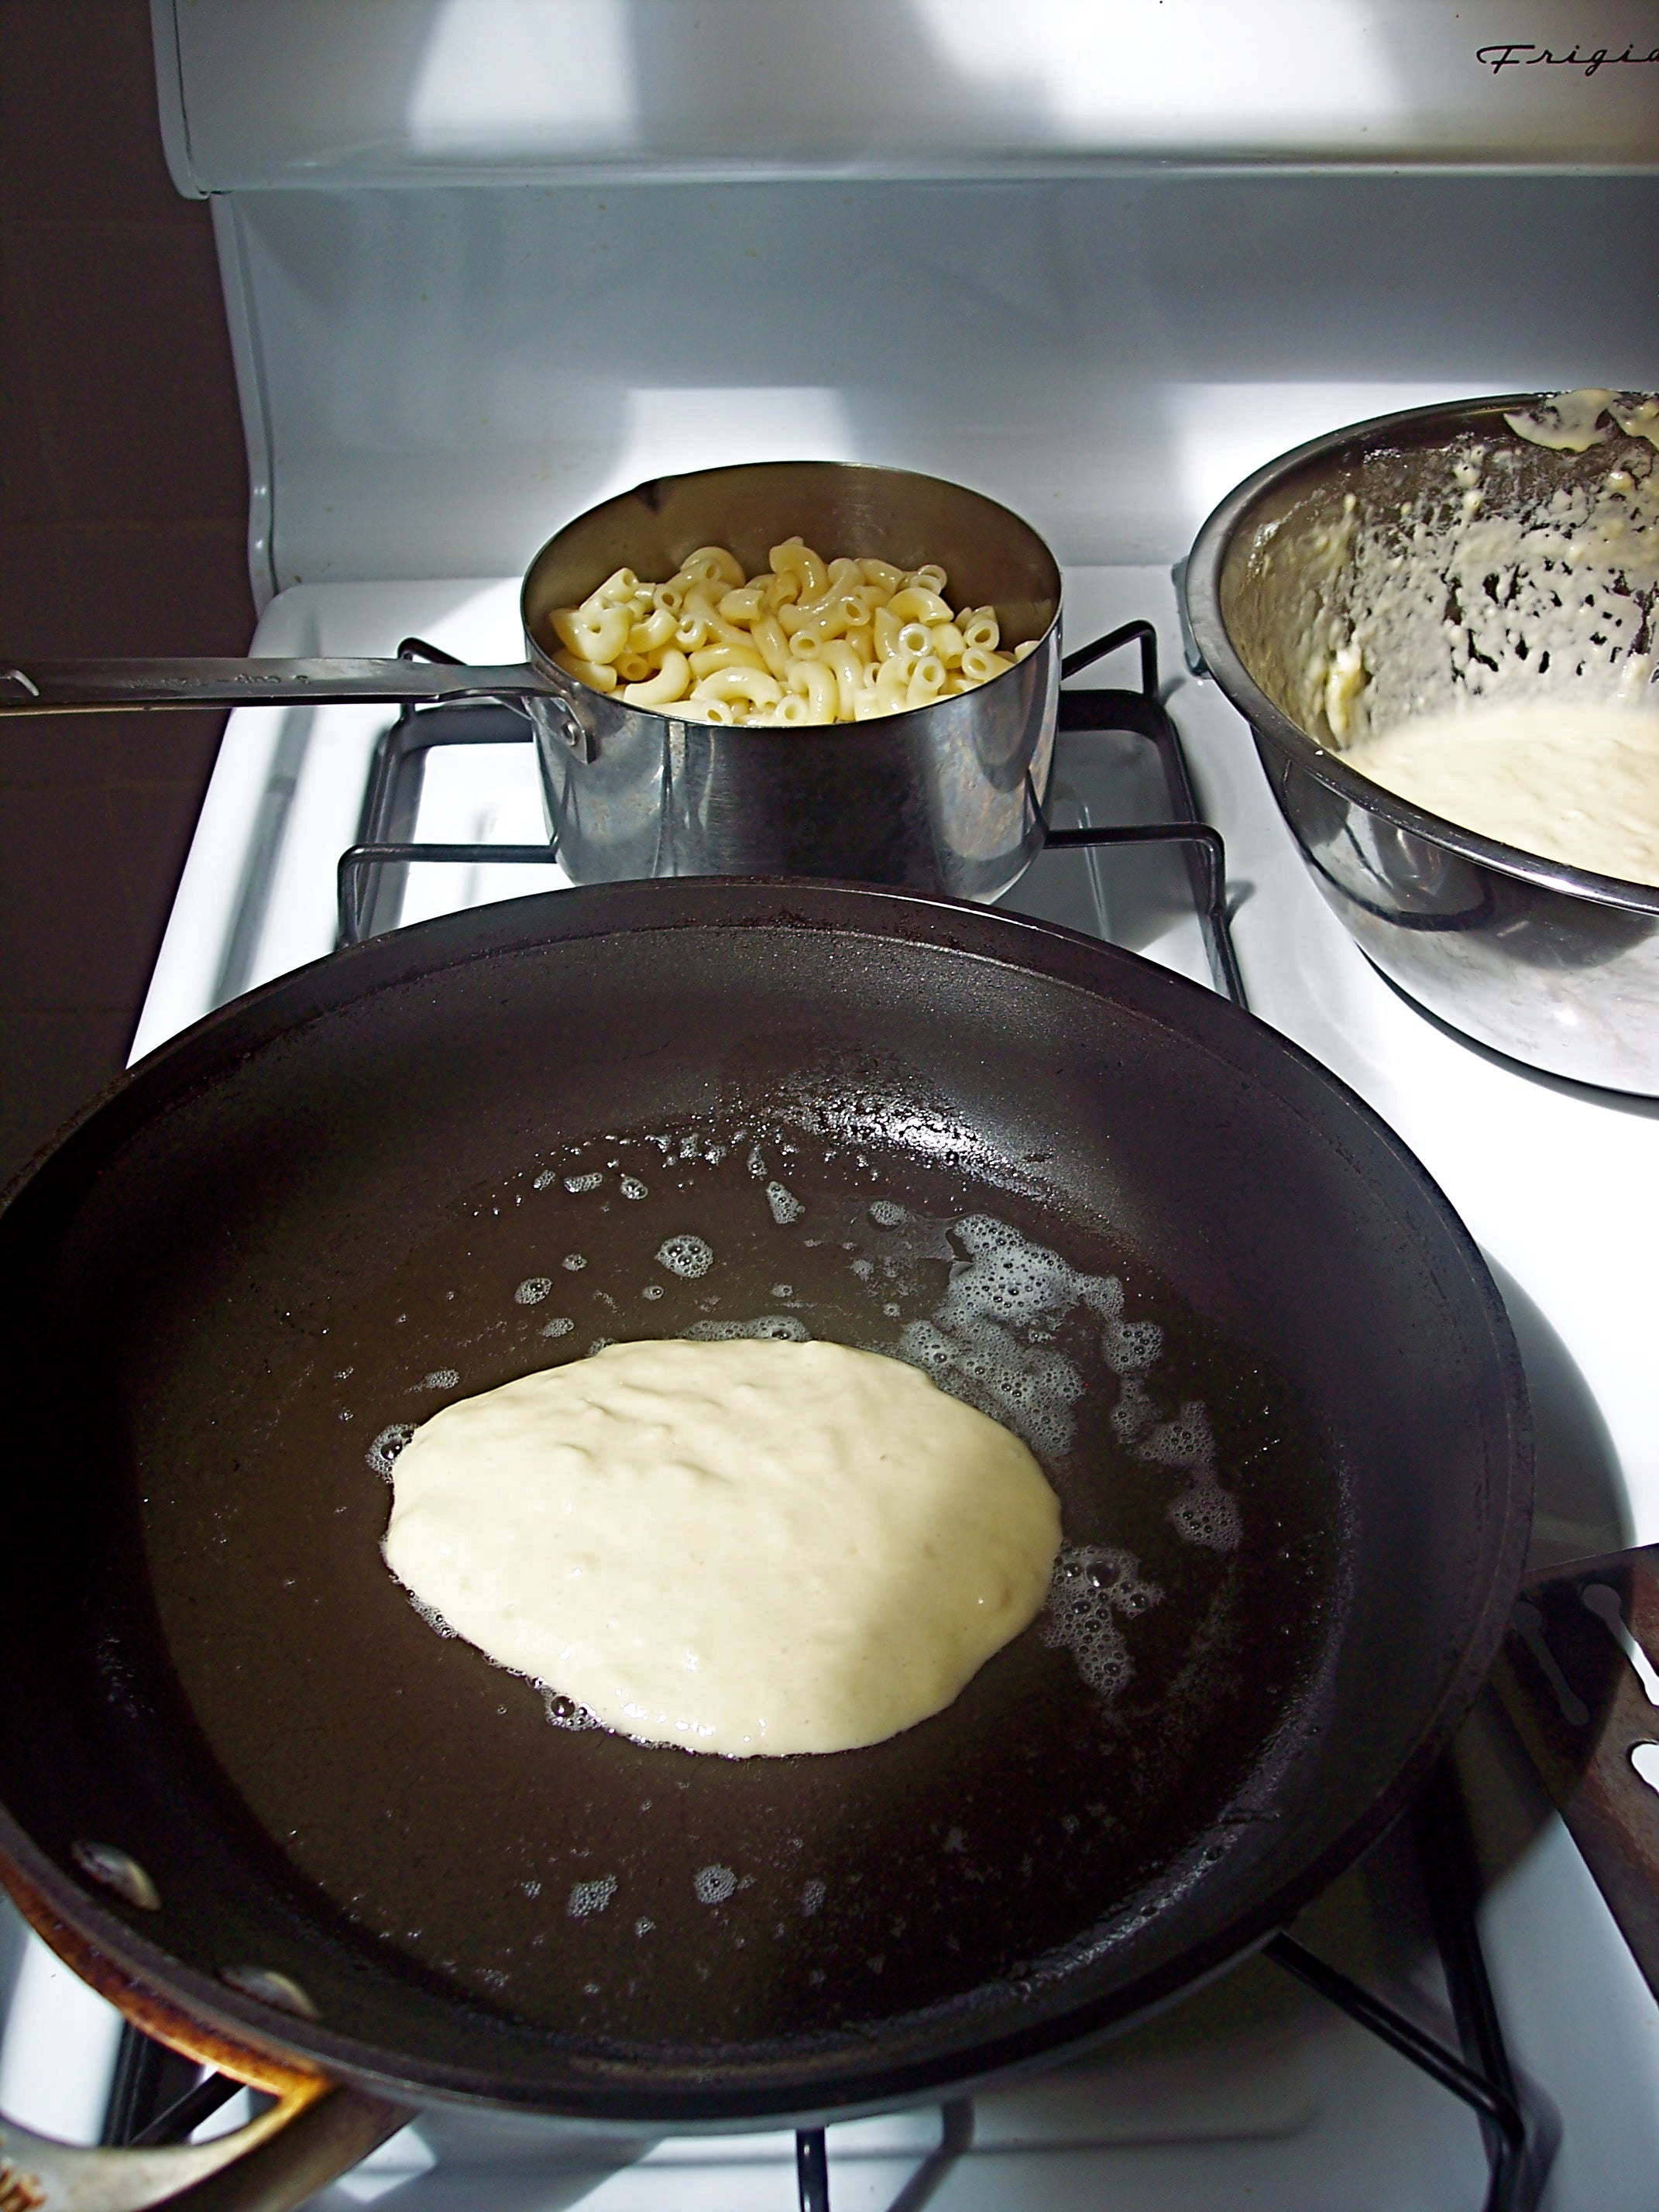 Pancake in pan, with macaroni